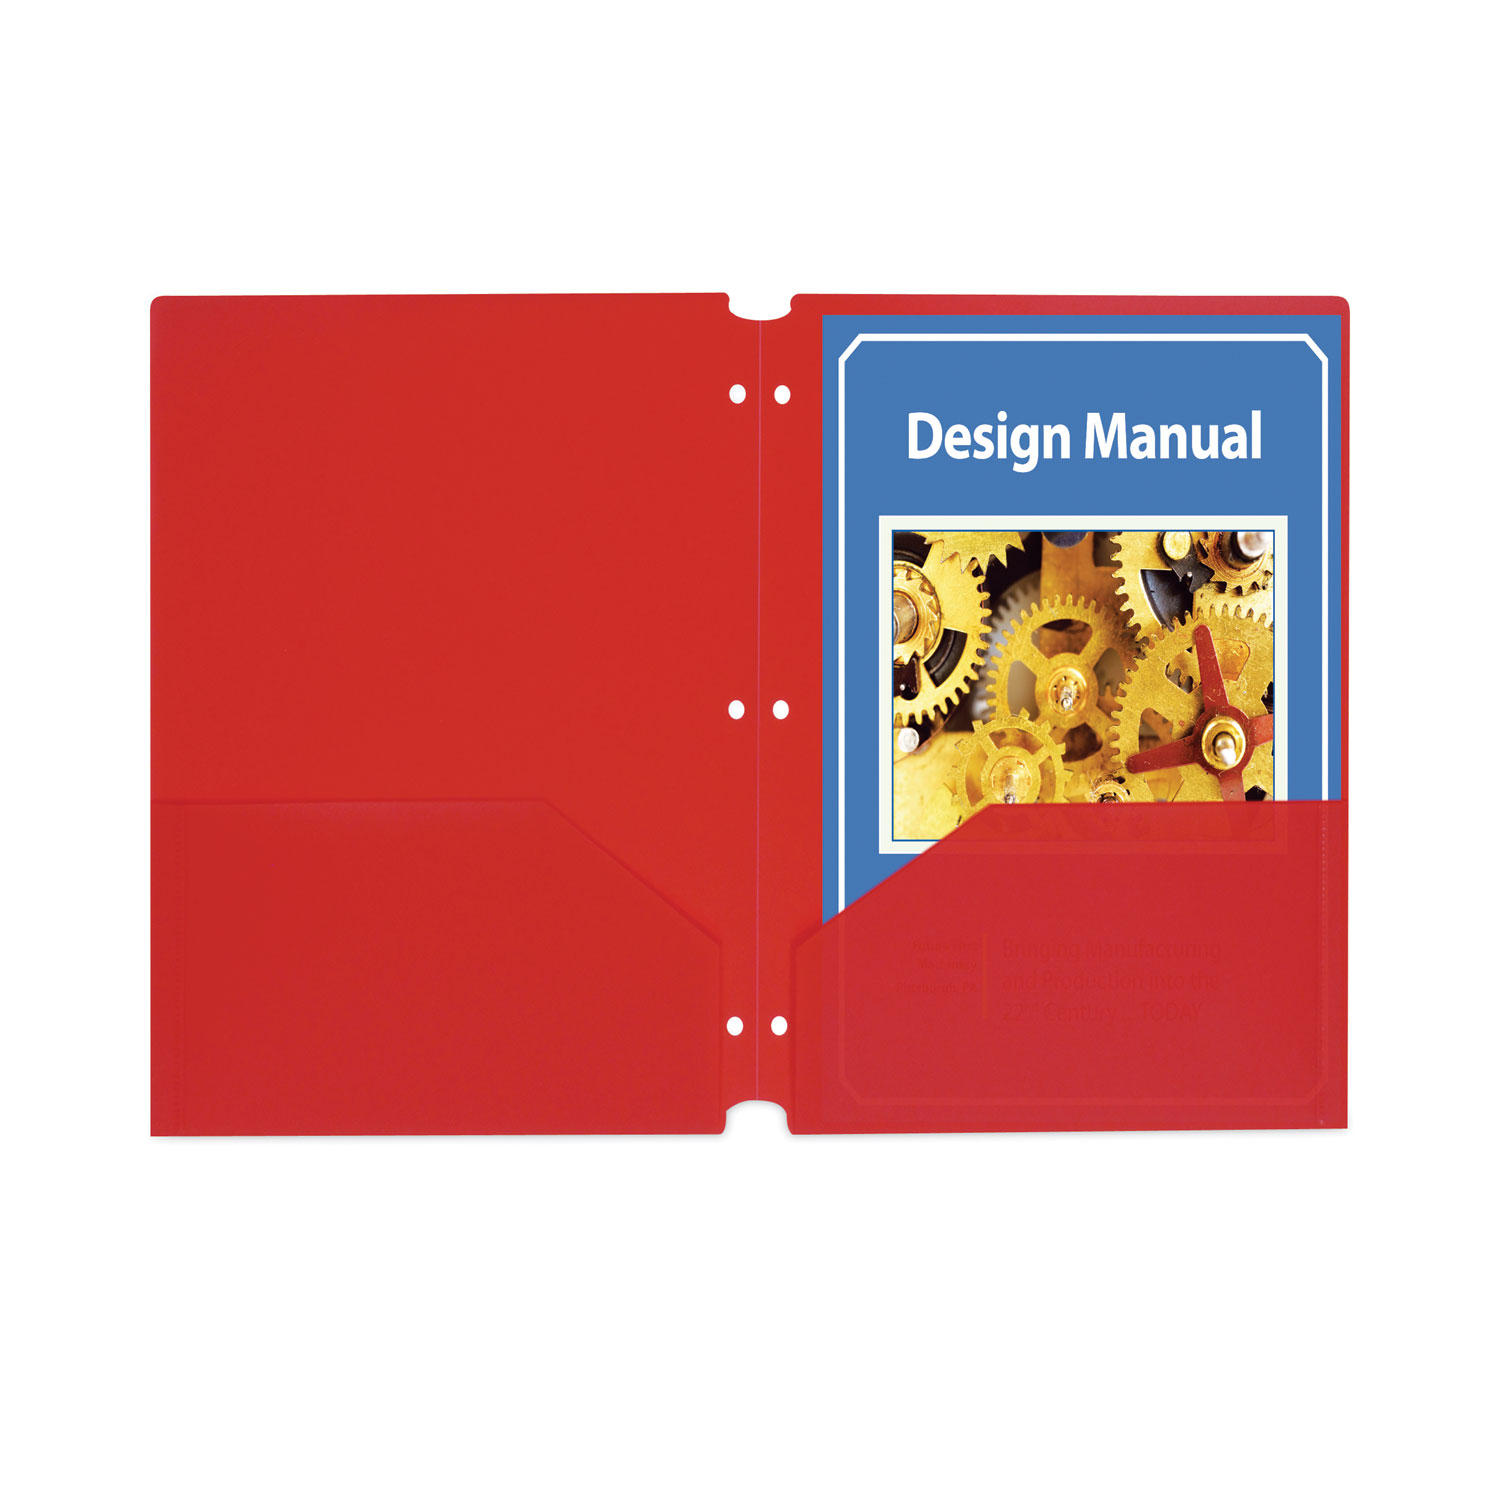 Envelope Maker Pocket Multi Functional Punch Board Portable